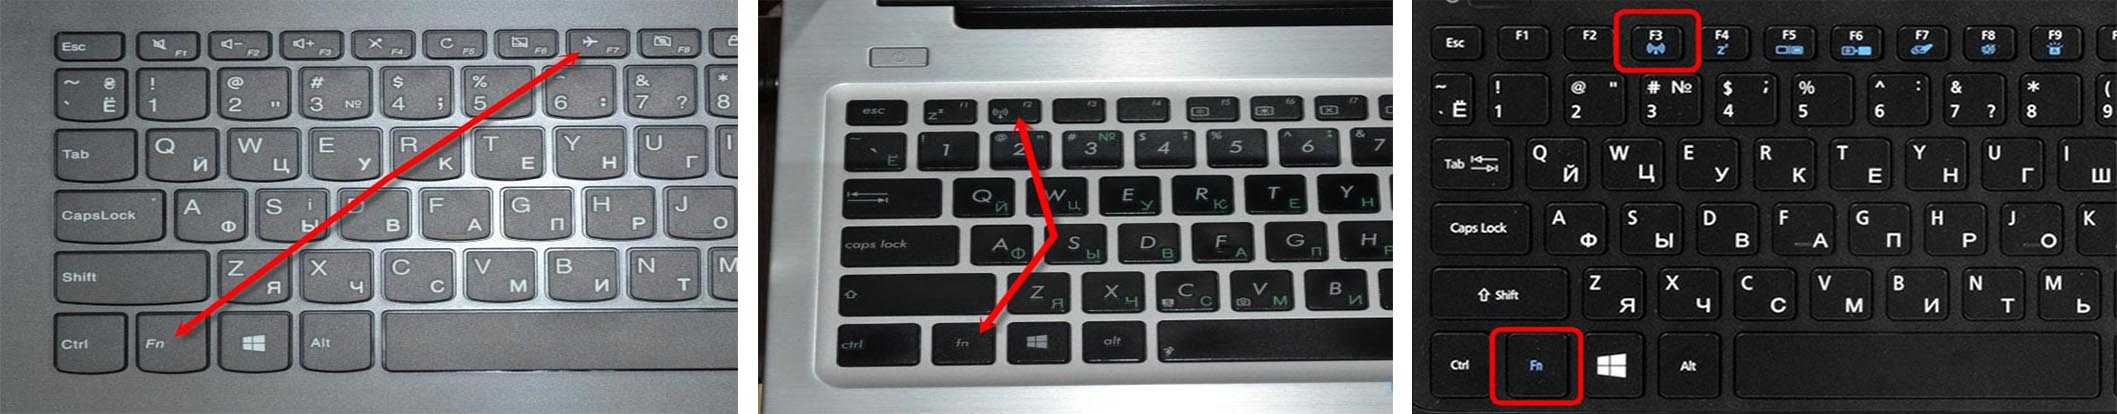 Как на ноутбуке включить / выключить подсветку клавиатуры